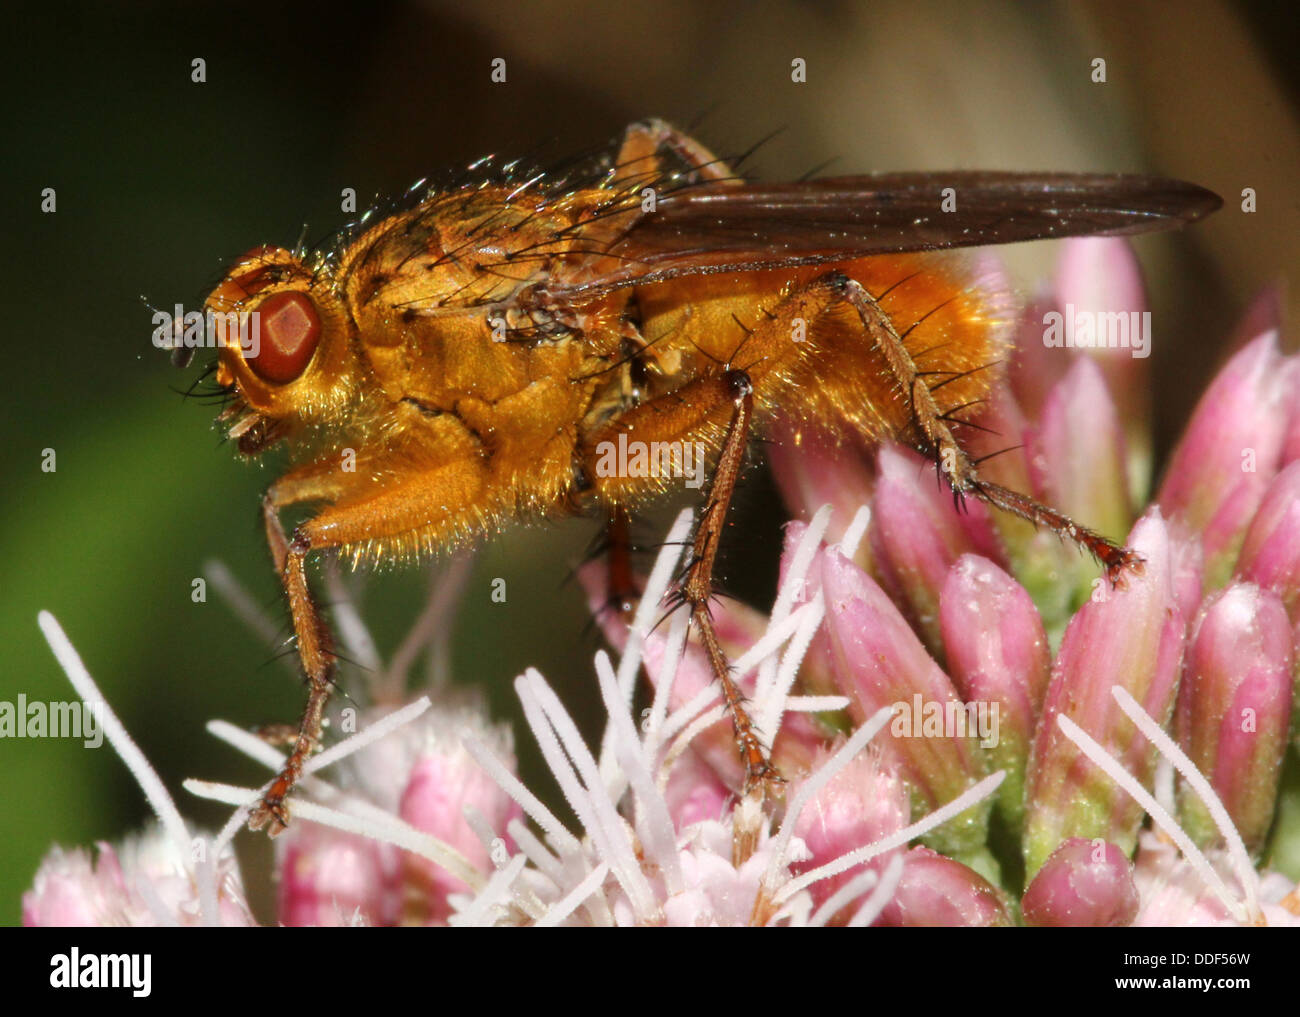 La bouse d'or jaune ou voler (Scatophaga stercoraria) posant sur une fleur Banque D'Images